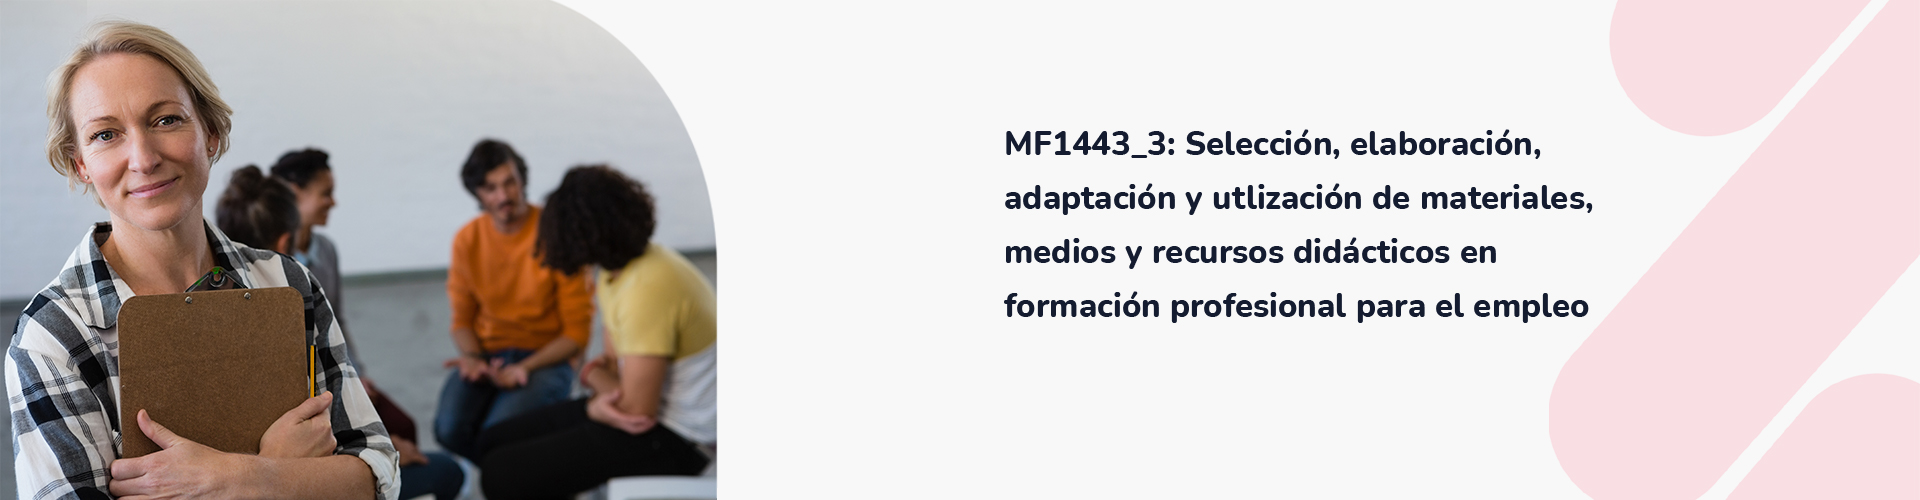 MF1443_3_ Selección, elaboración, adaptación y utlización de materiales, medios y recursos didácticos en formación profesional para el empleo